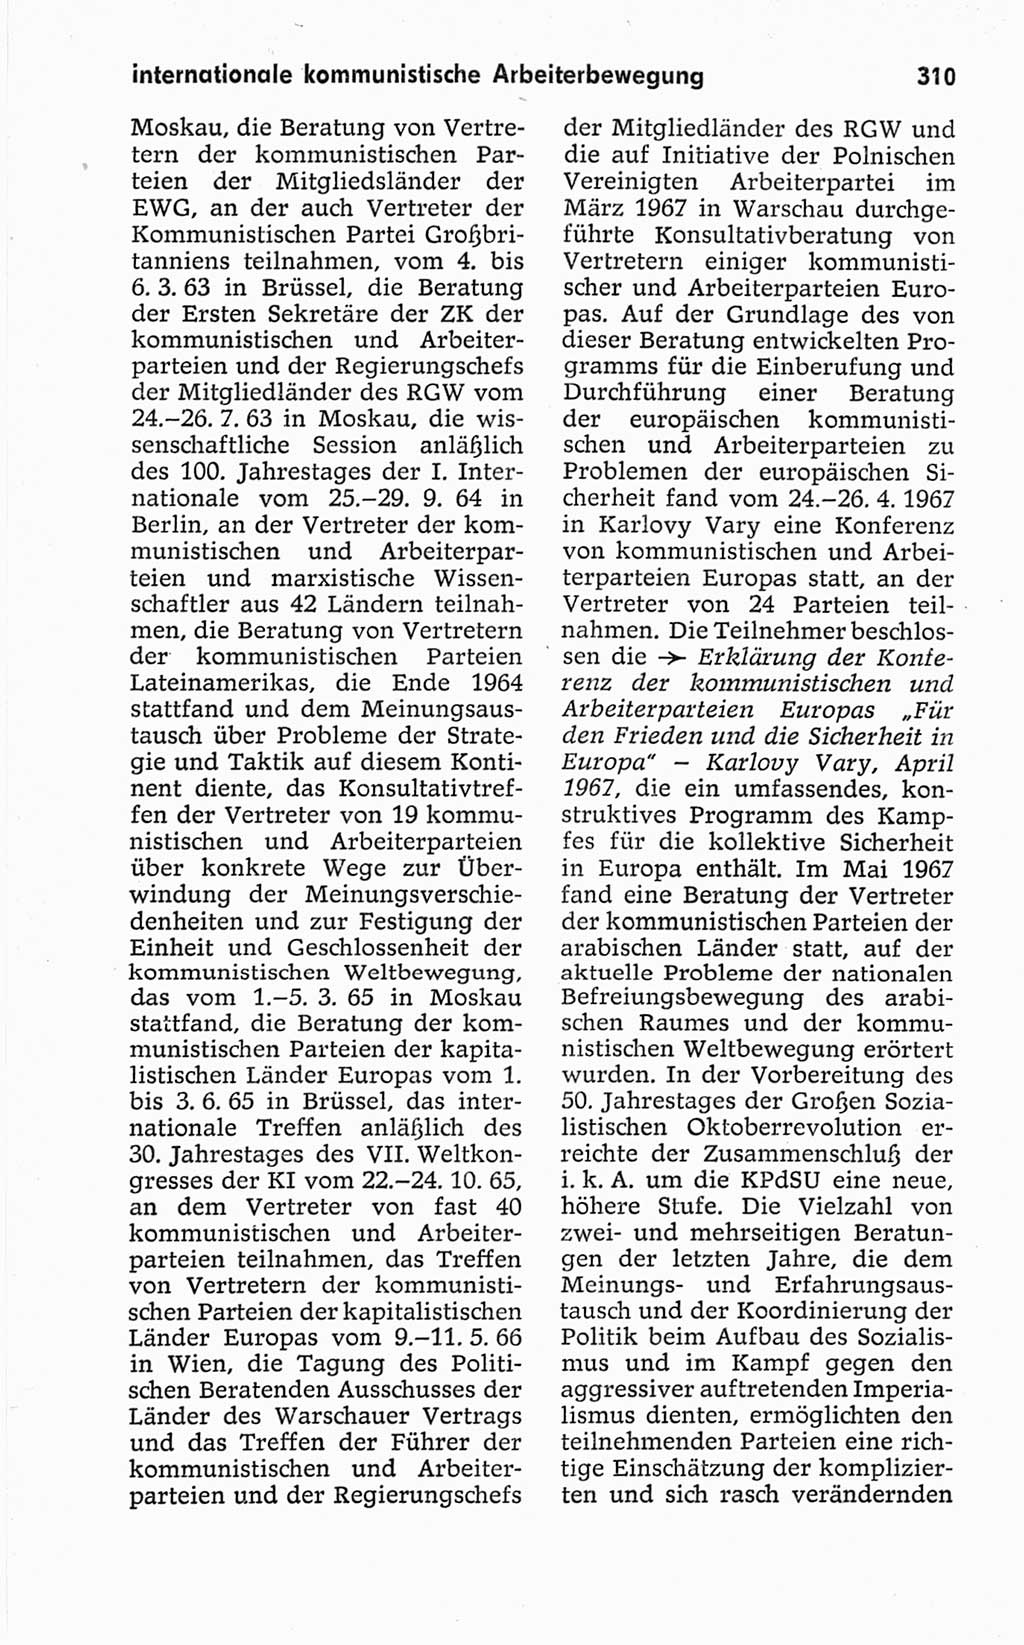 Kleines politisches Wörterbuch [Deutsche Demokratische Republik (DDR)] 1967, Seite 310 (Kl. pol. Wb. DDR 1967, S. 310)